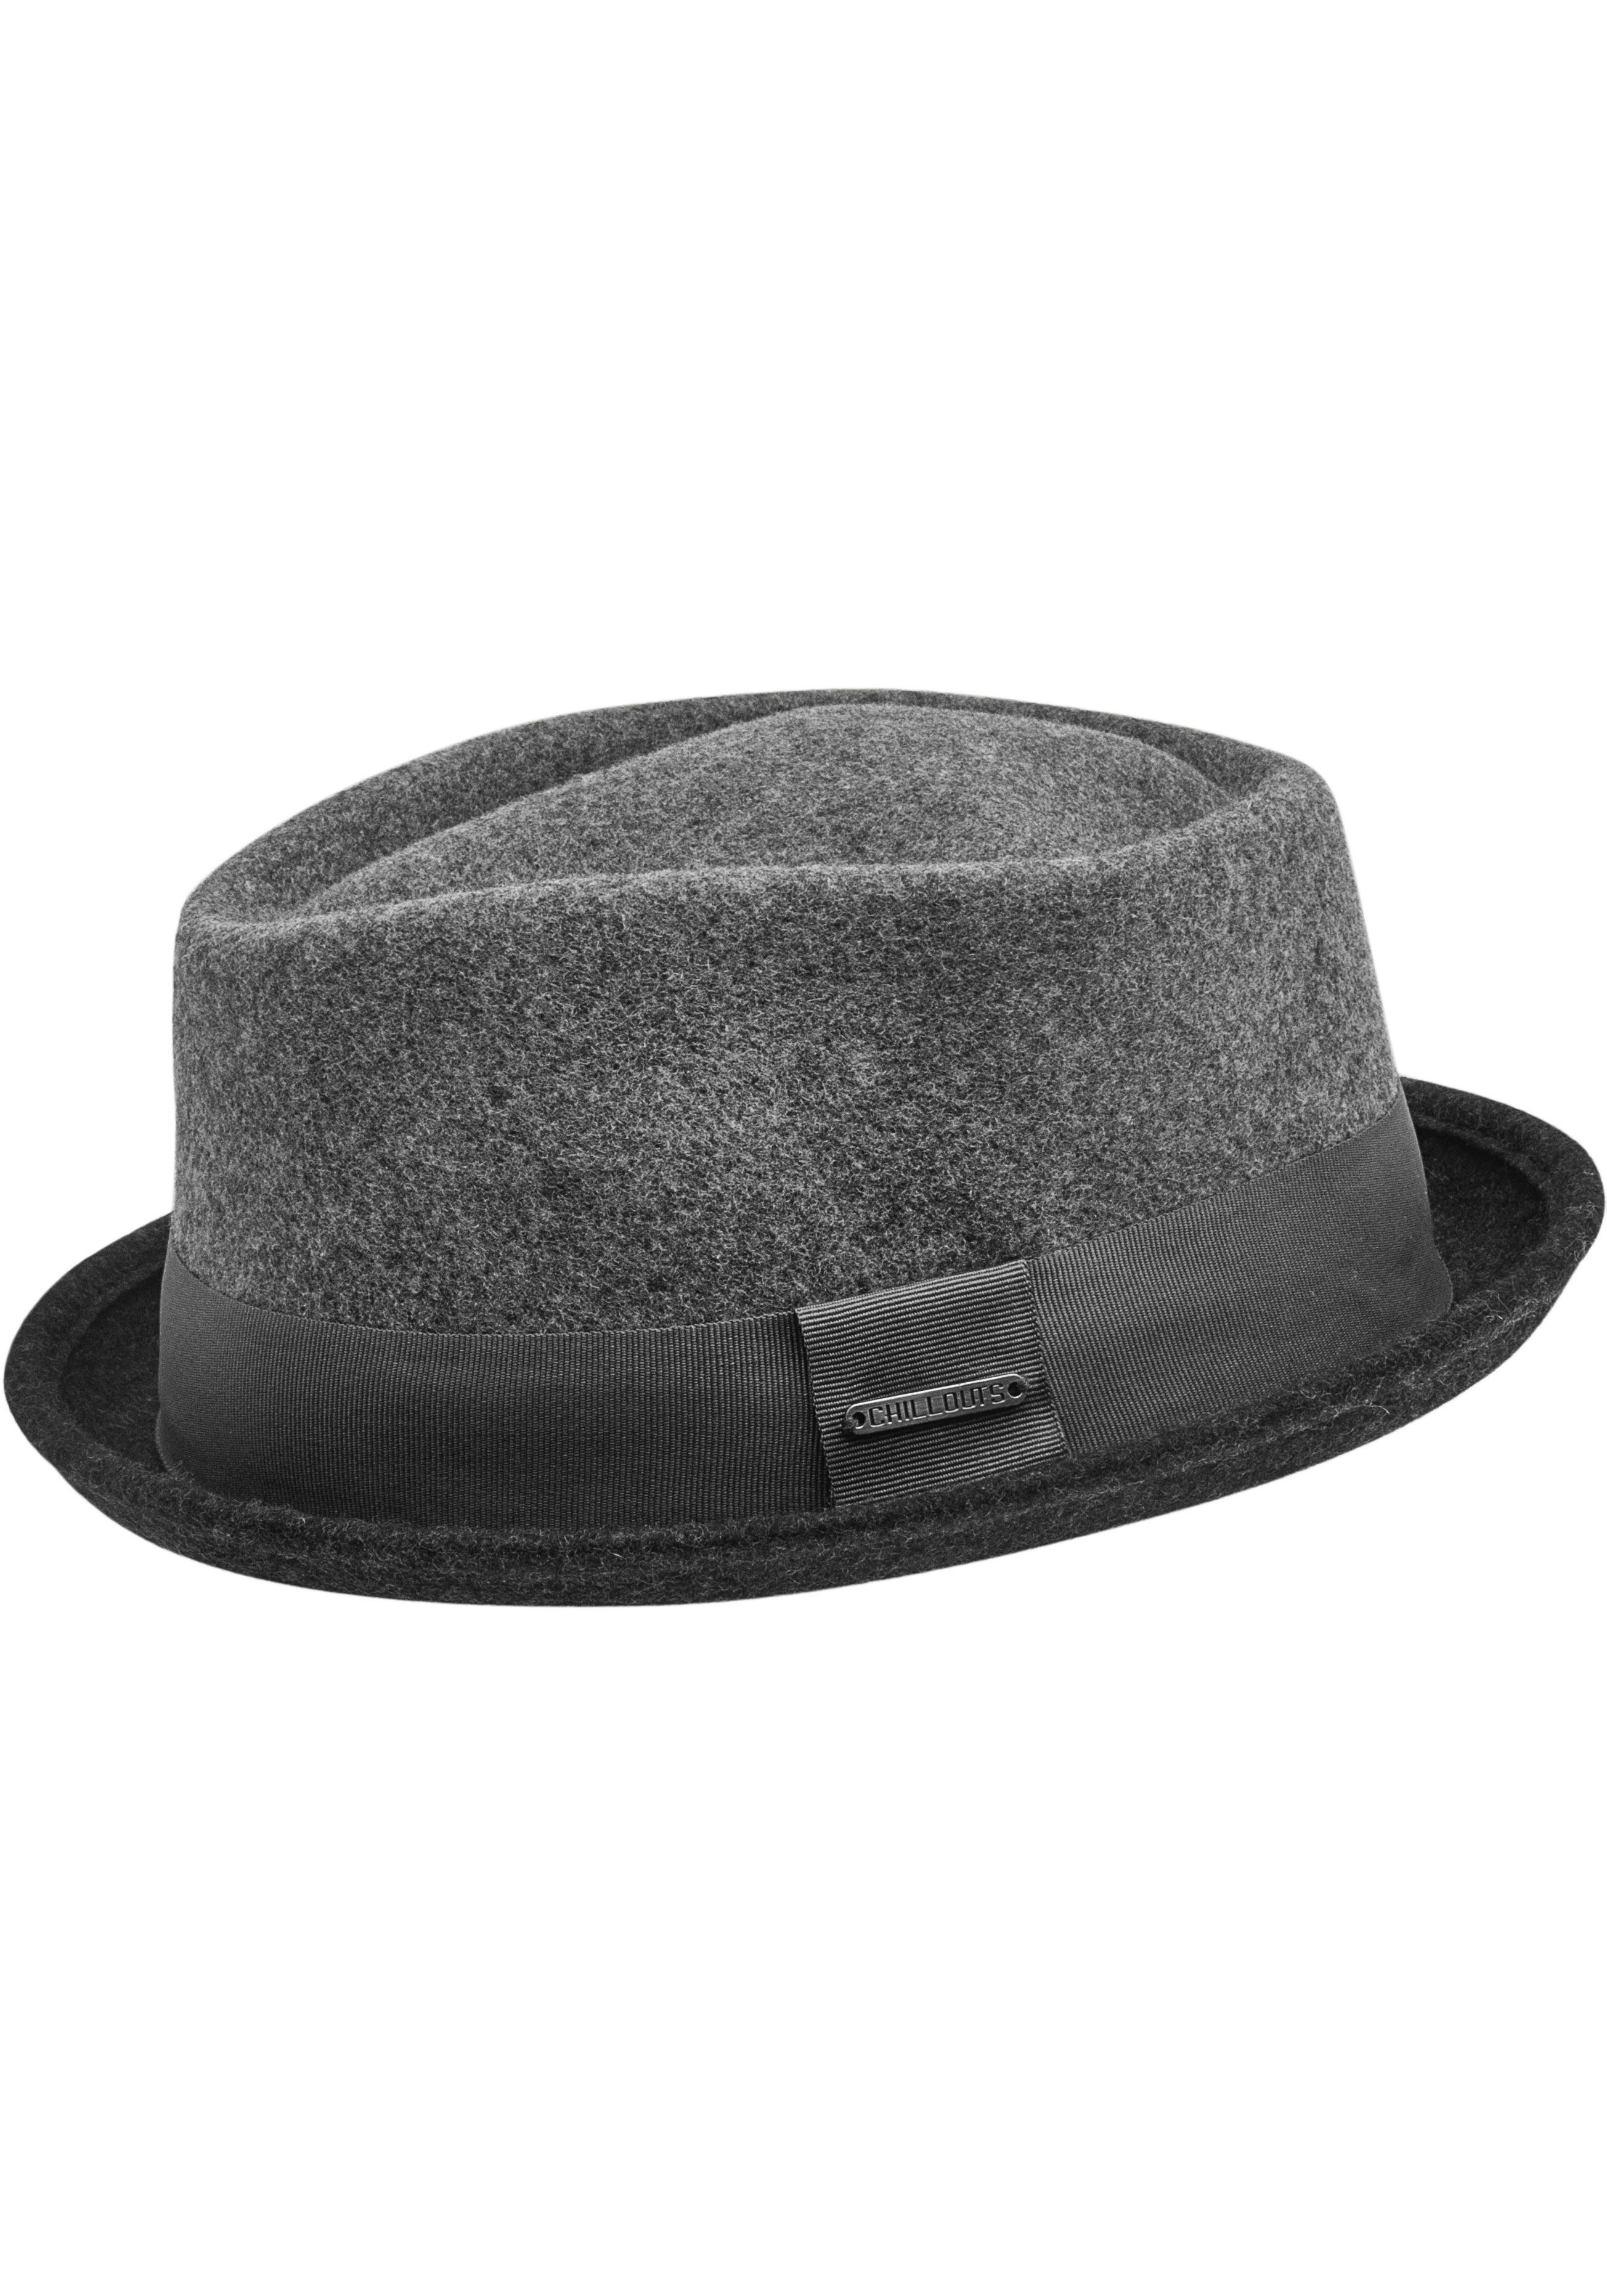 chillouts Filzhut Neal Hat